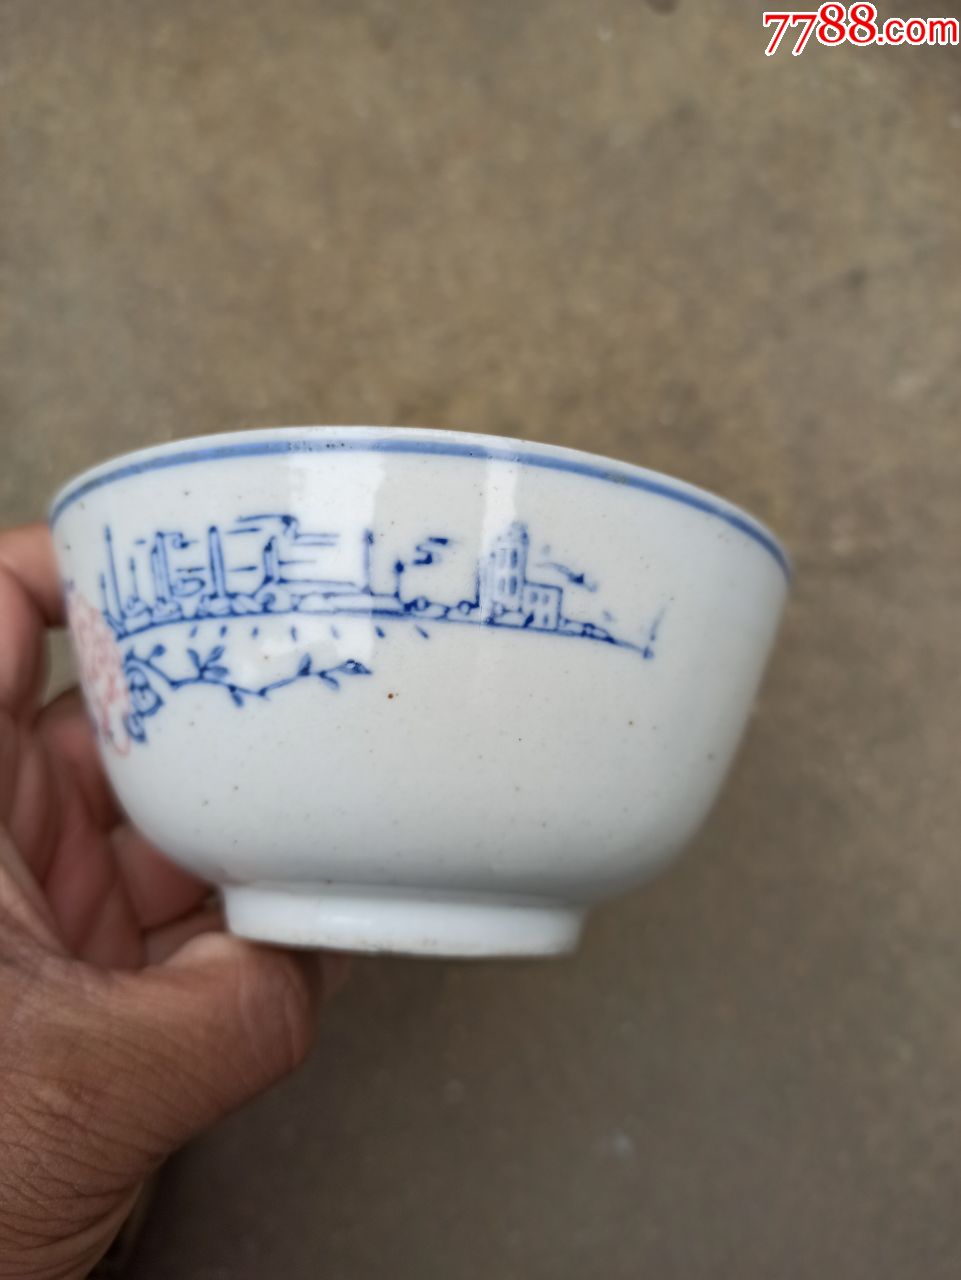 六七十年代的瓷器碗,口径12厘米,口有个小磕,其余完好